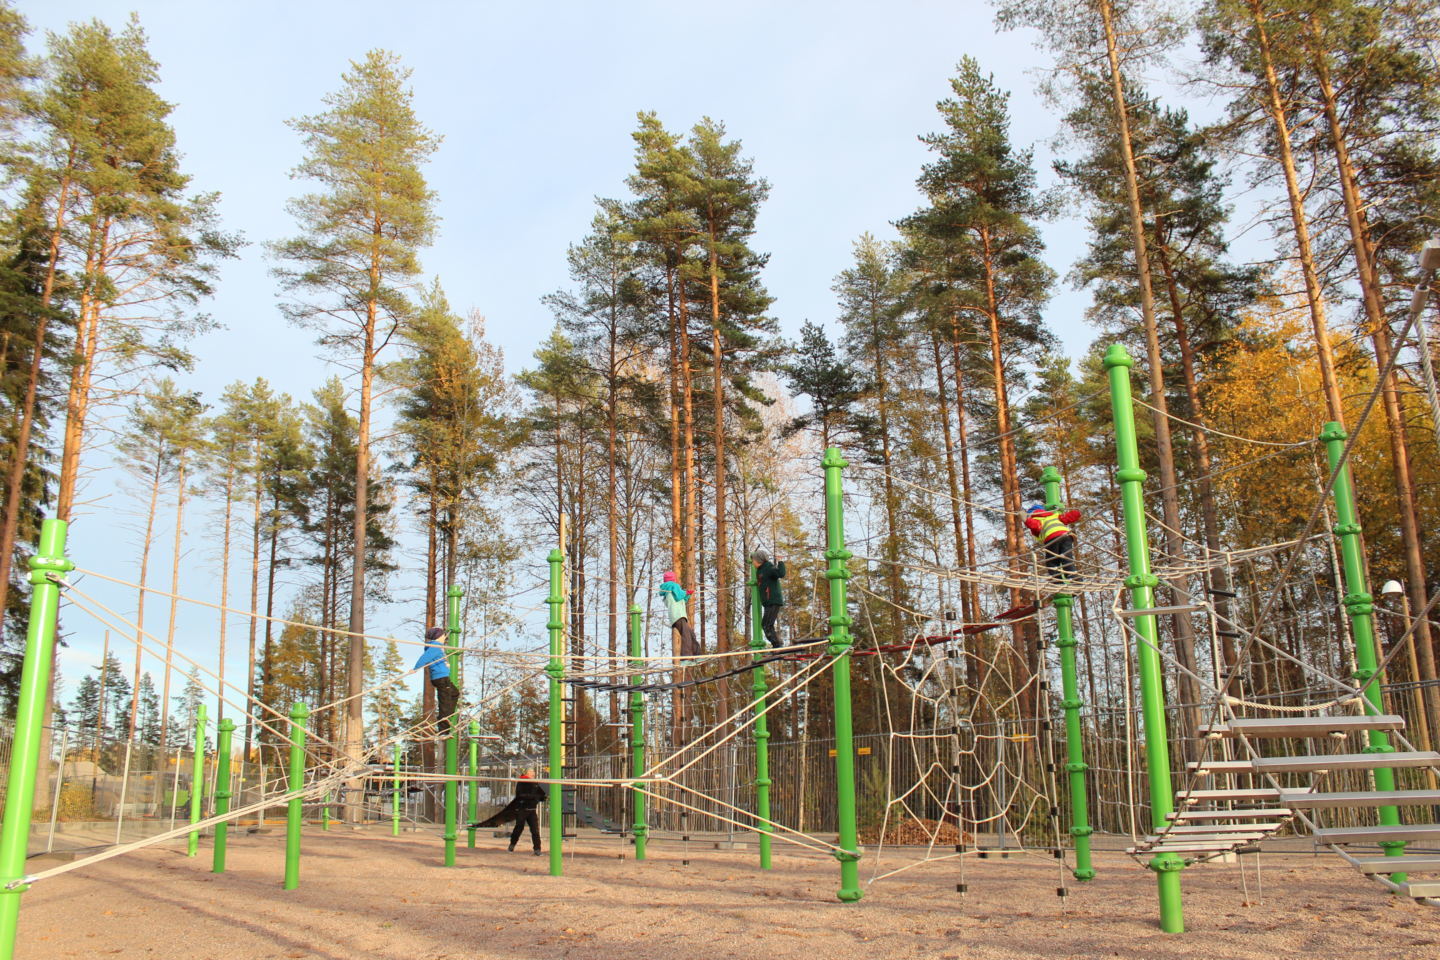 Heinzenpuistosta löytyvä yli 42 metrinen kiipeilyteline on saanut innoituksensa liito-oravilta 